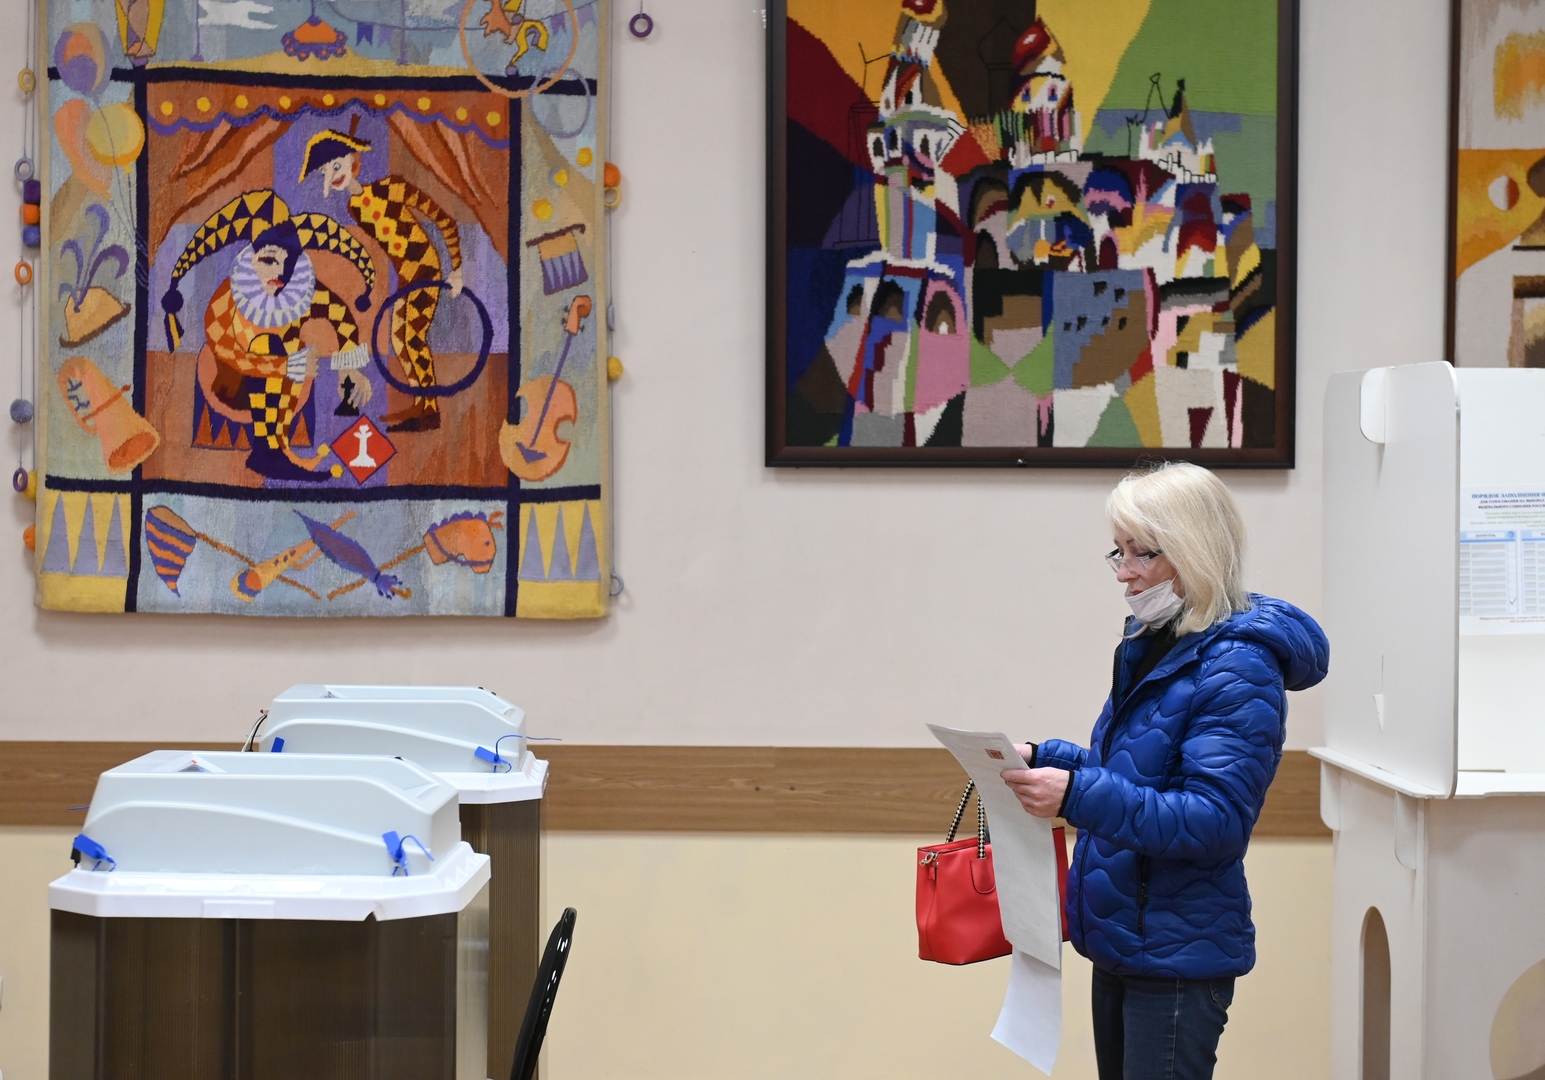 اليوم الثالث والأخير من انتخابات مجلس الدوما في روسيا